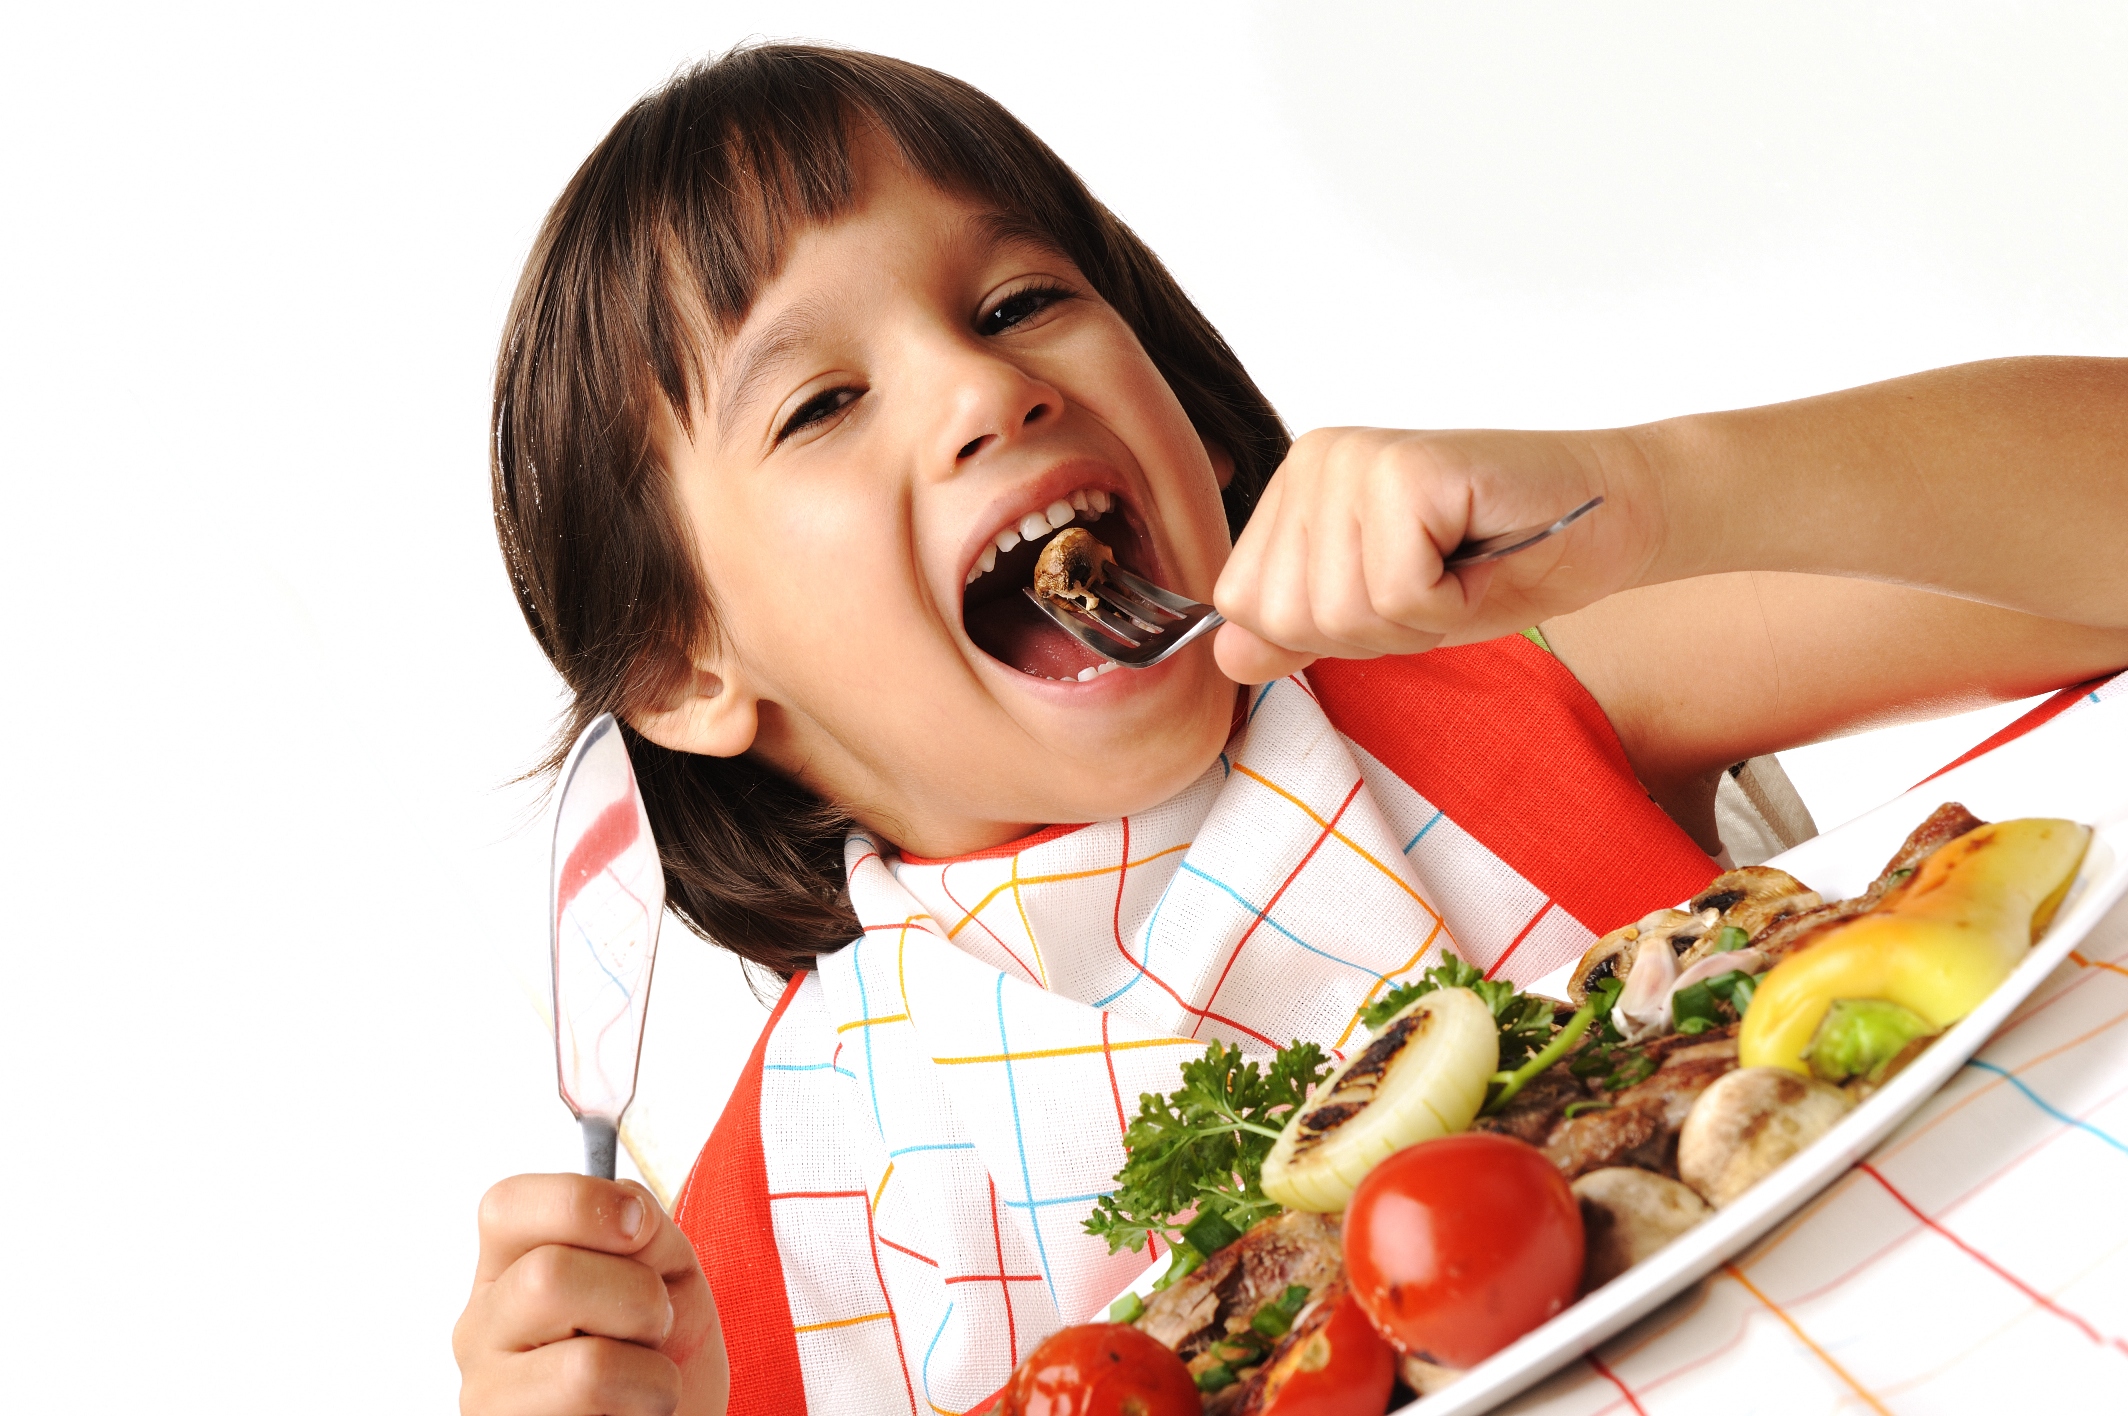 Держит еду во рту. Еда для детей. Ребенок ест. Питание детей. Здоровое питание для детей.